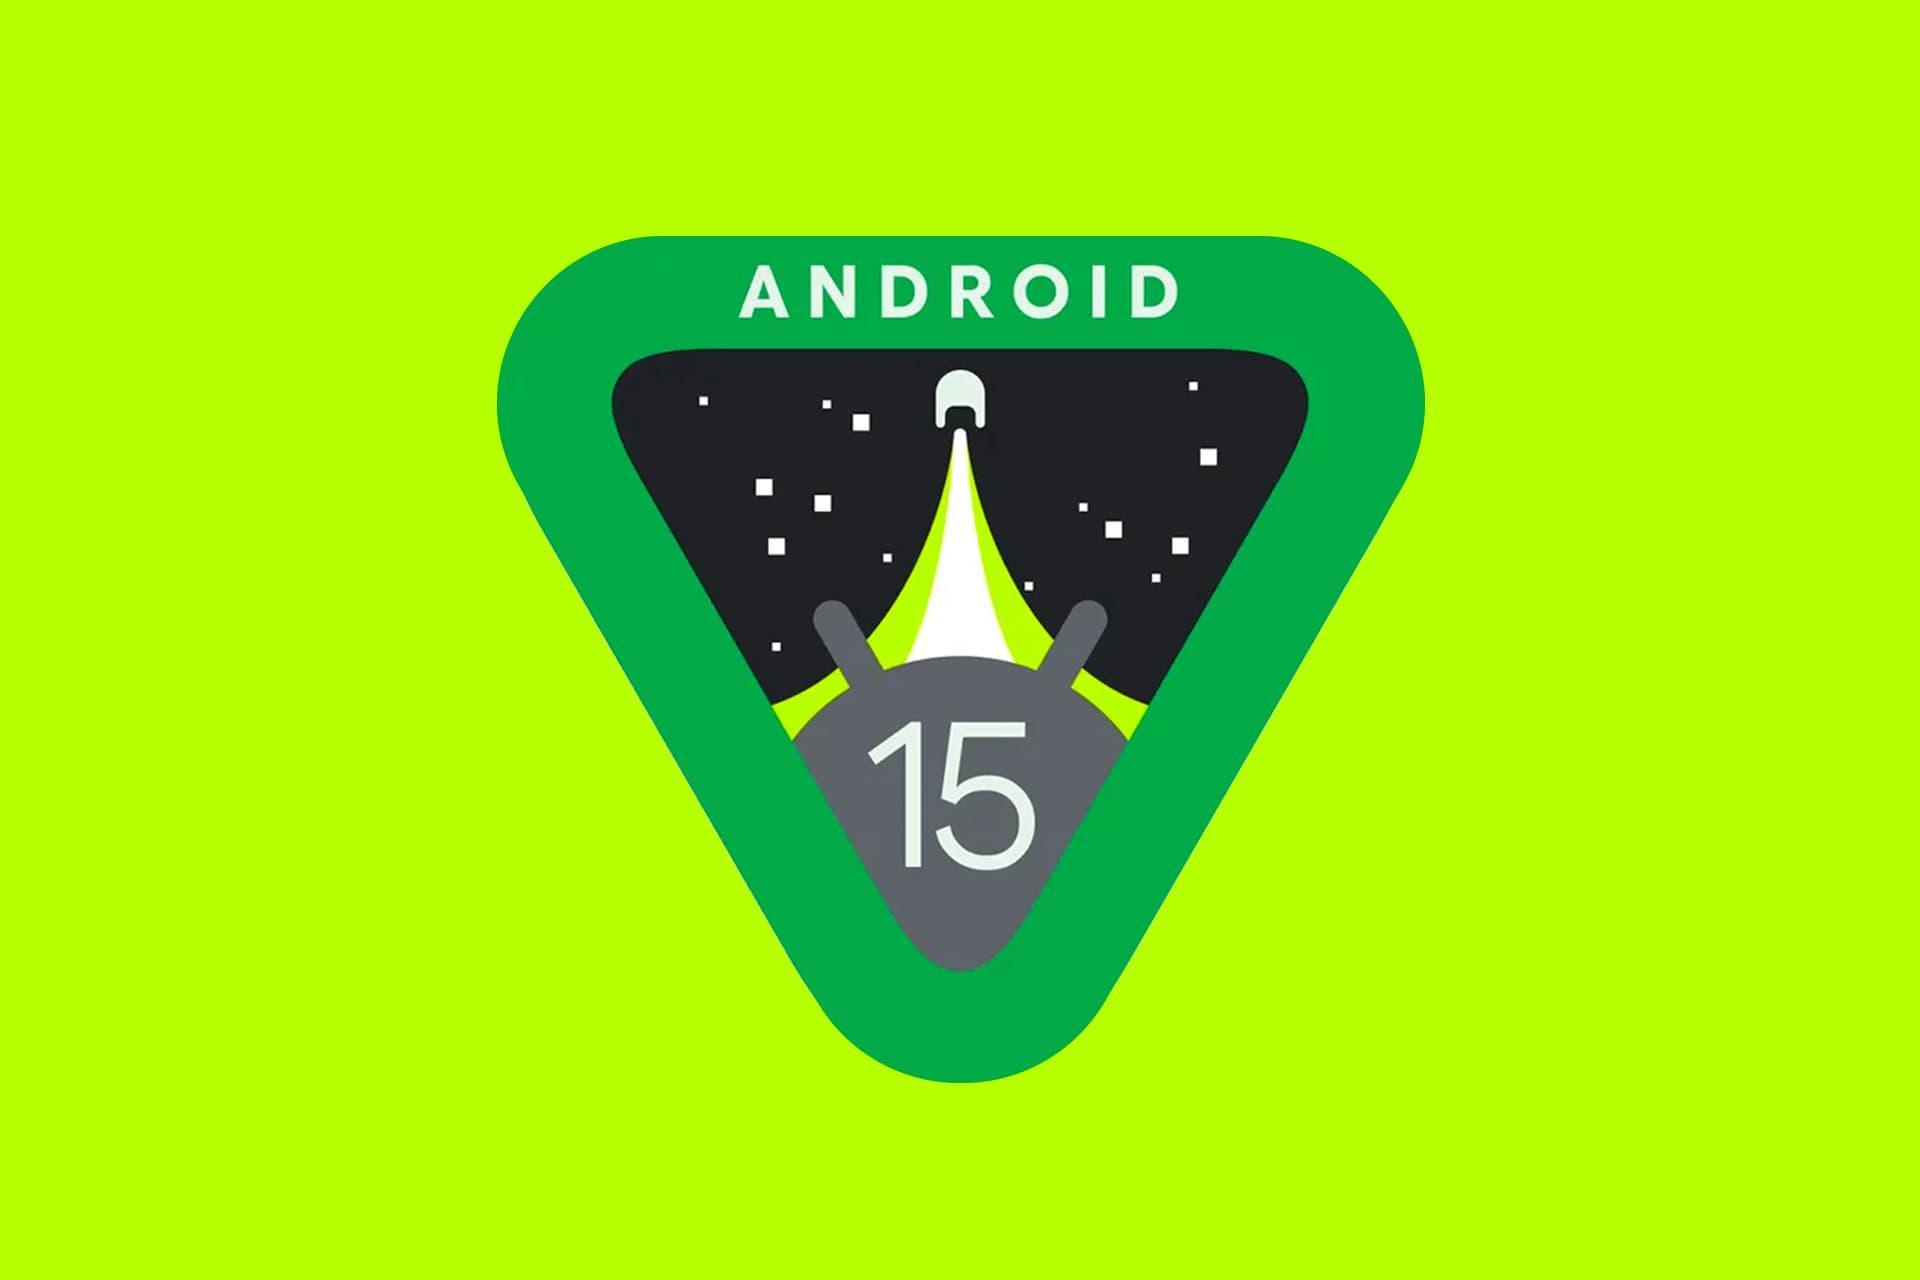 لوگو اندروید ۱۵ گوگل / Android 15 پس زمینه سبز